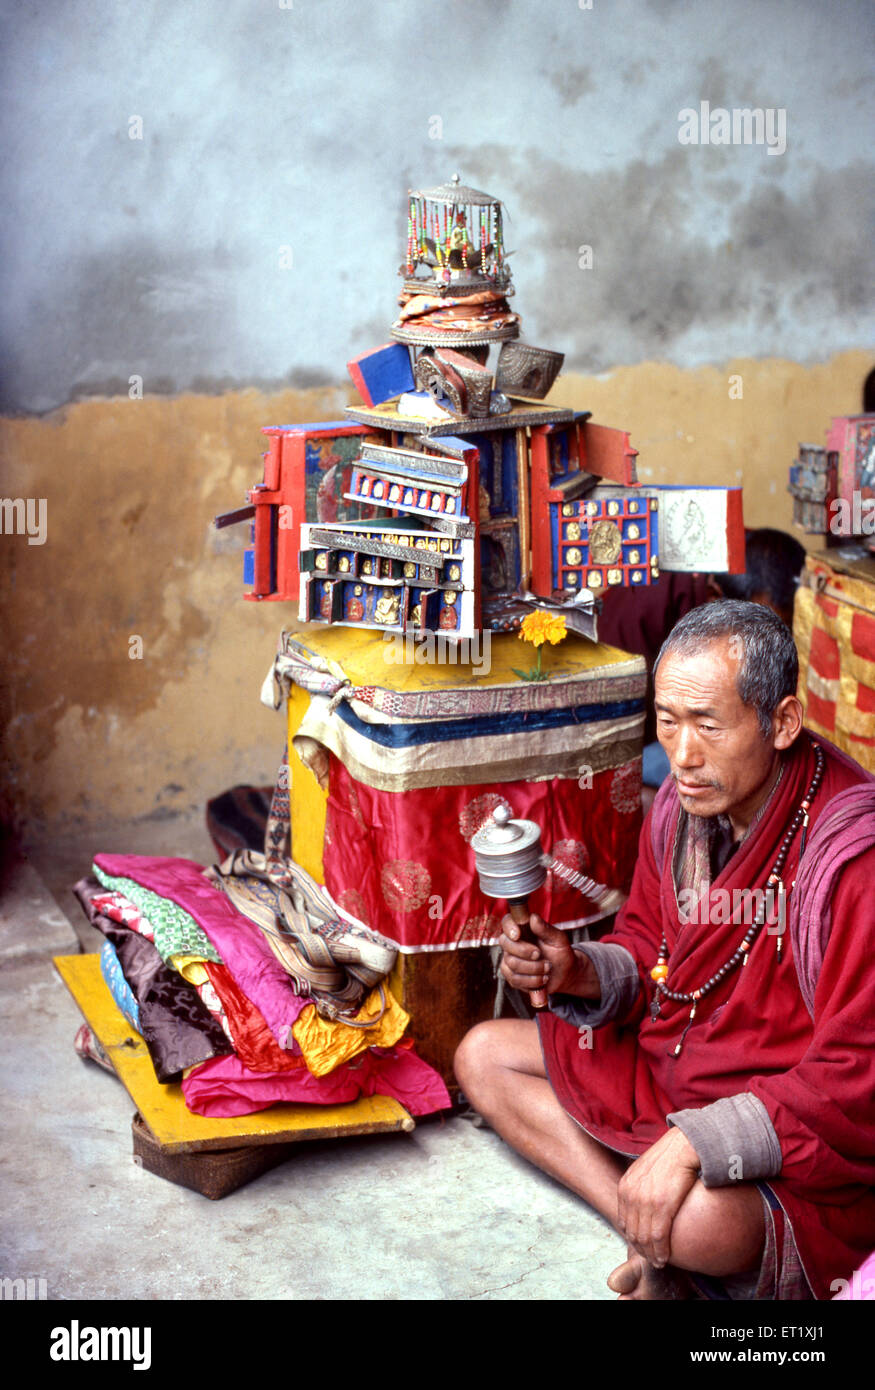 Prêtre bhoutanais avec temple mobile de Bouddha fait tourner la roue de prière au Bhoutan ; Asie ; ancienne image millésime des années 1900 Banque D'Images